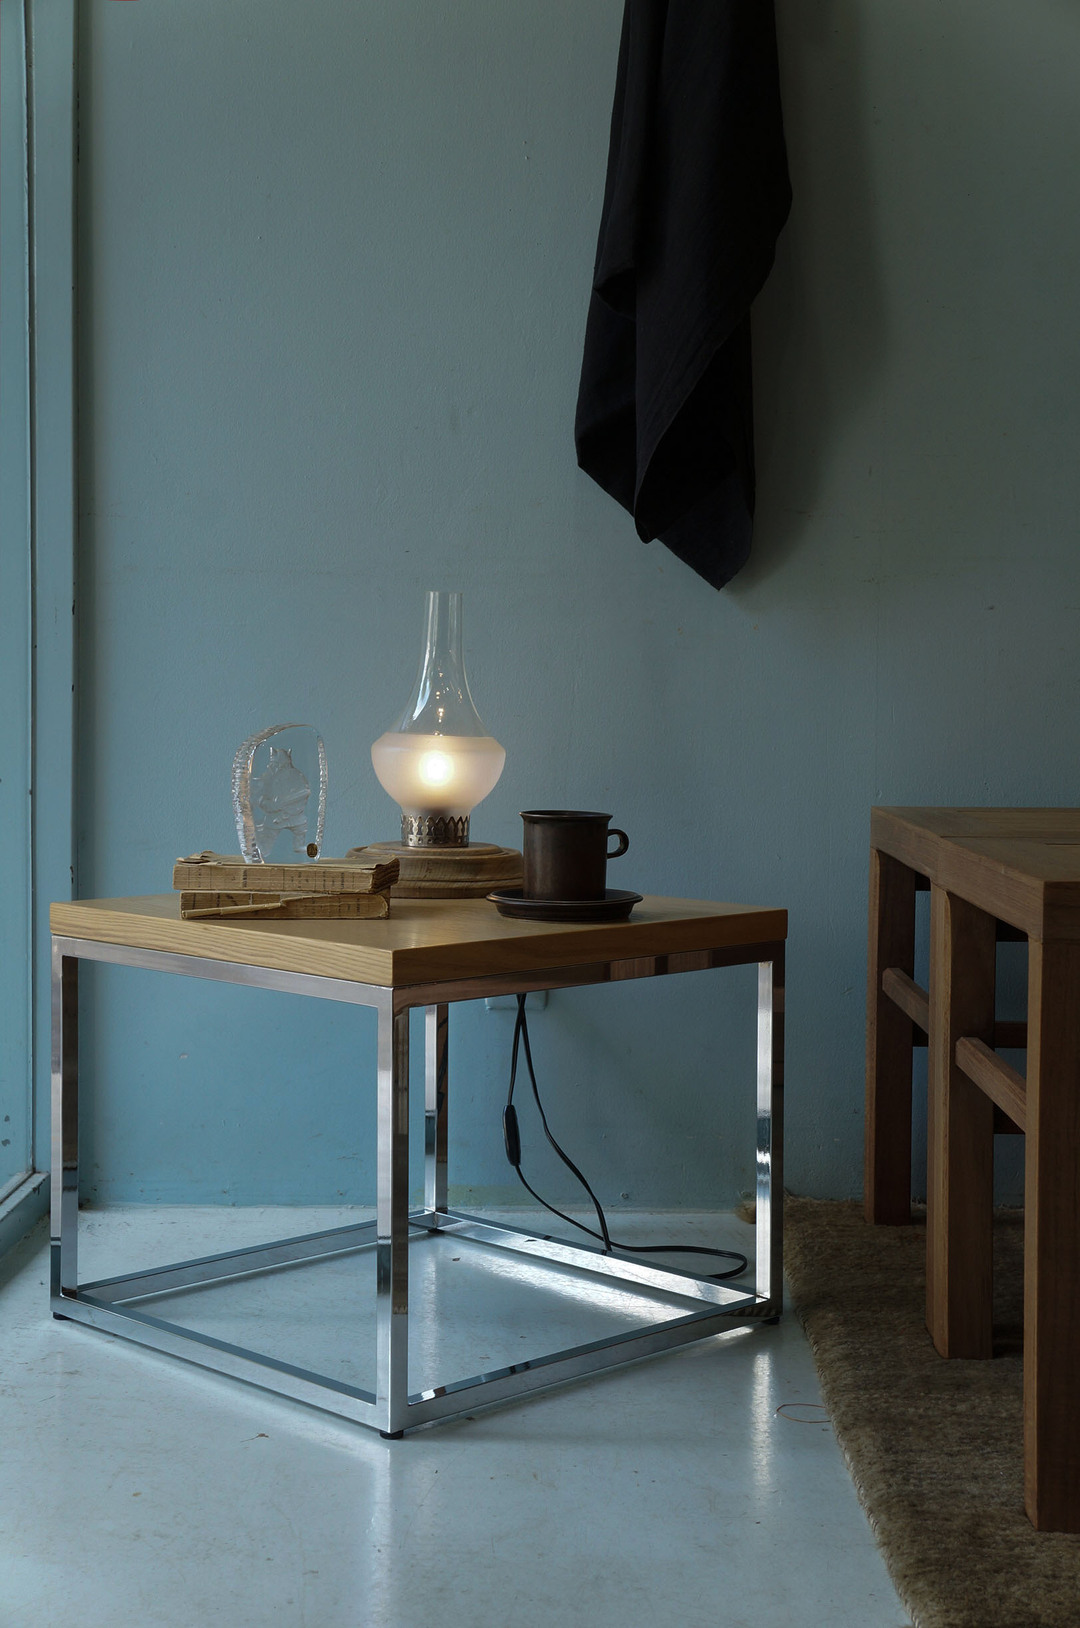 SOGOKAGU × ichimiri-design Low Table “GEOMETRY”/相合家具製作所×イチミリデザイン ローテーブル ジオメトリ・カク ホワイトアッシュ シンプルモダン